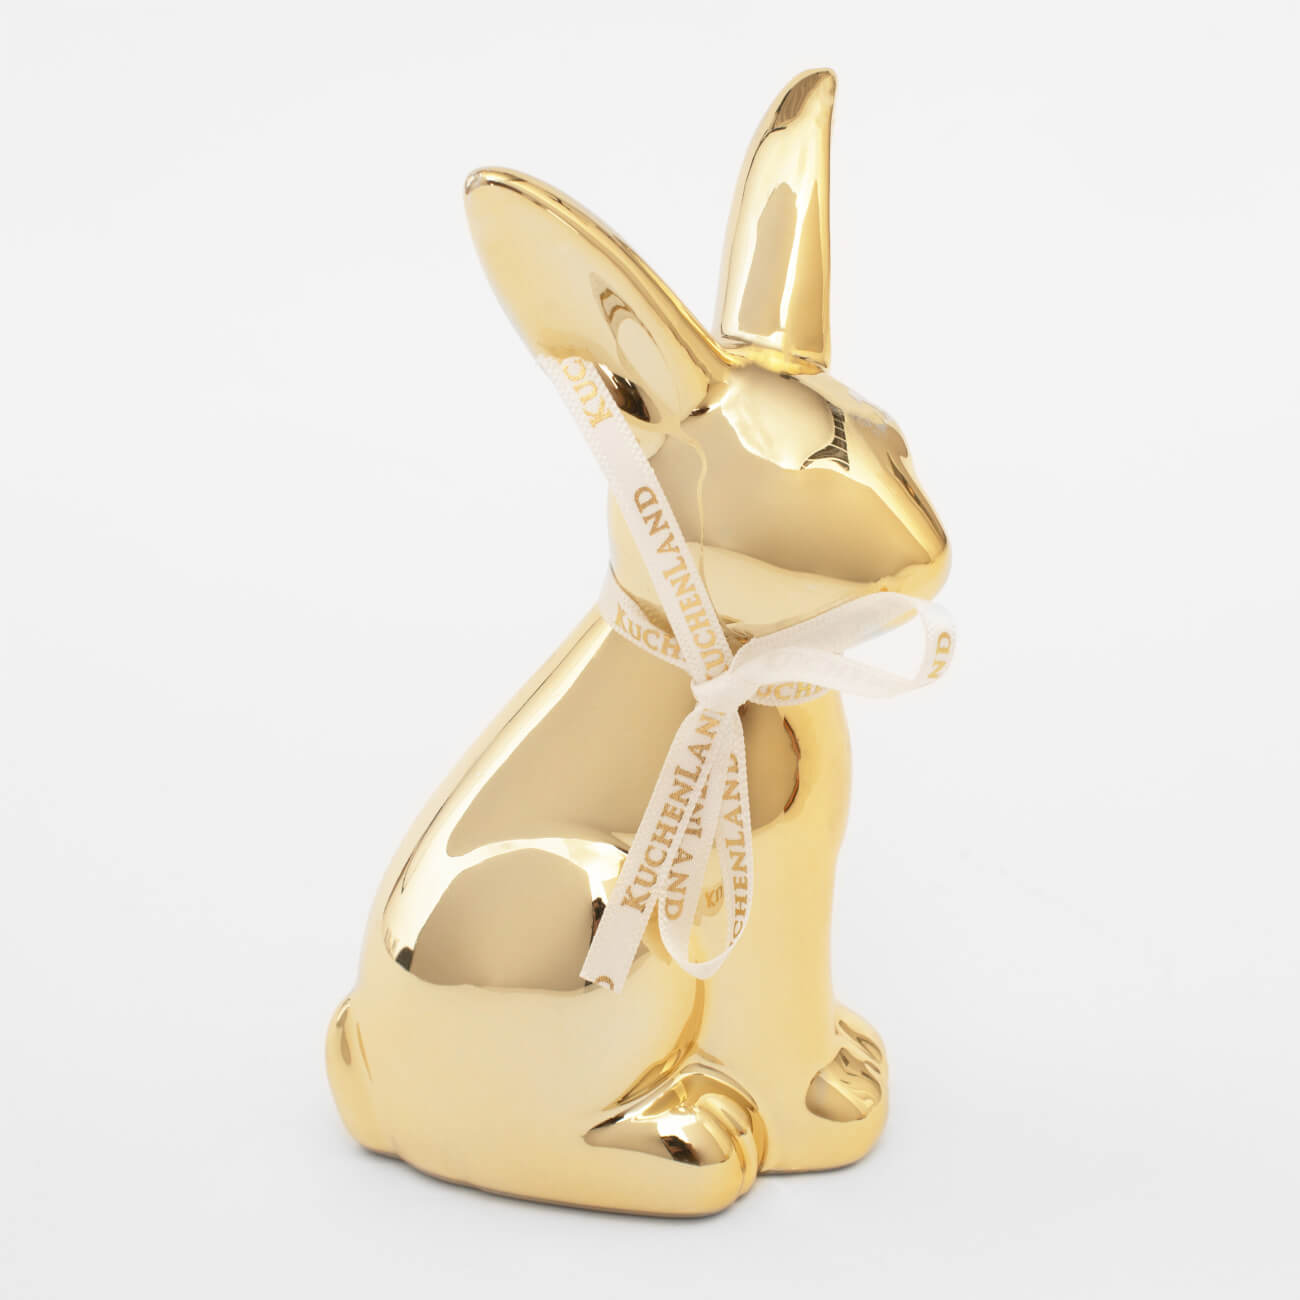 Статуэтка, 13 см, керамика, золотистая, Кролик, Easter gold подставка для яйца 10 см керамика бело золотистая кролик со скорлупкой easter gold